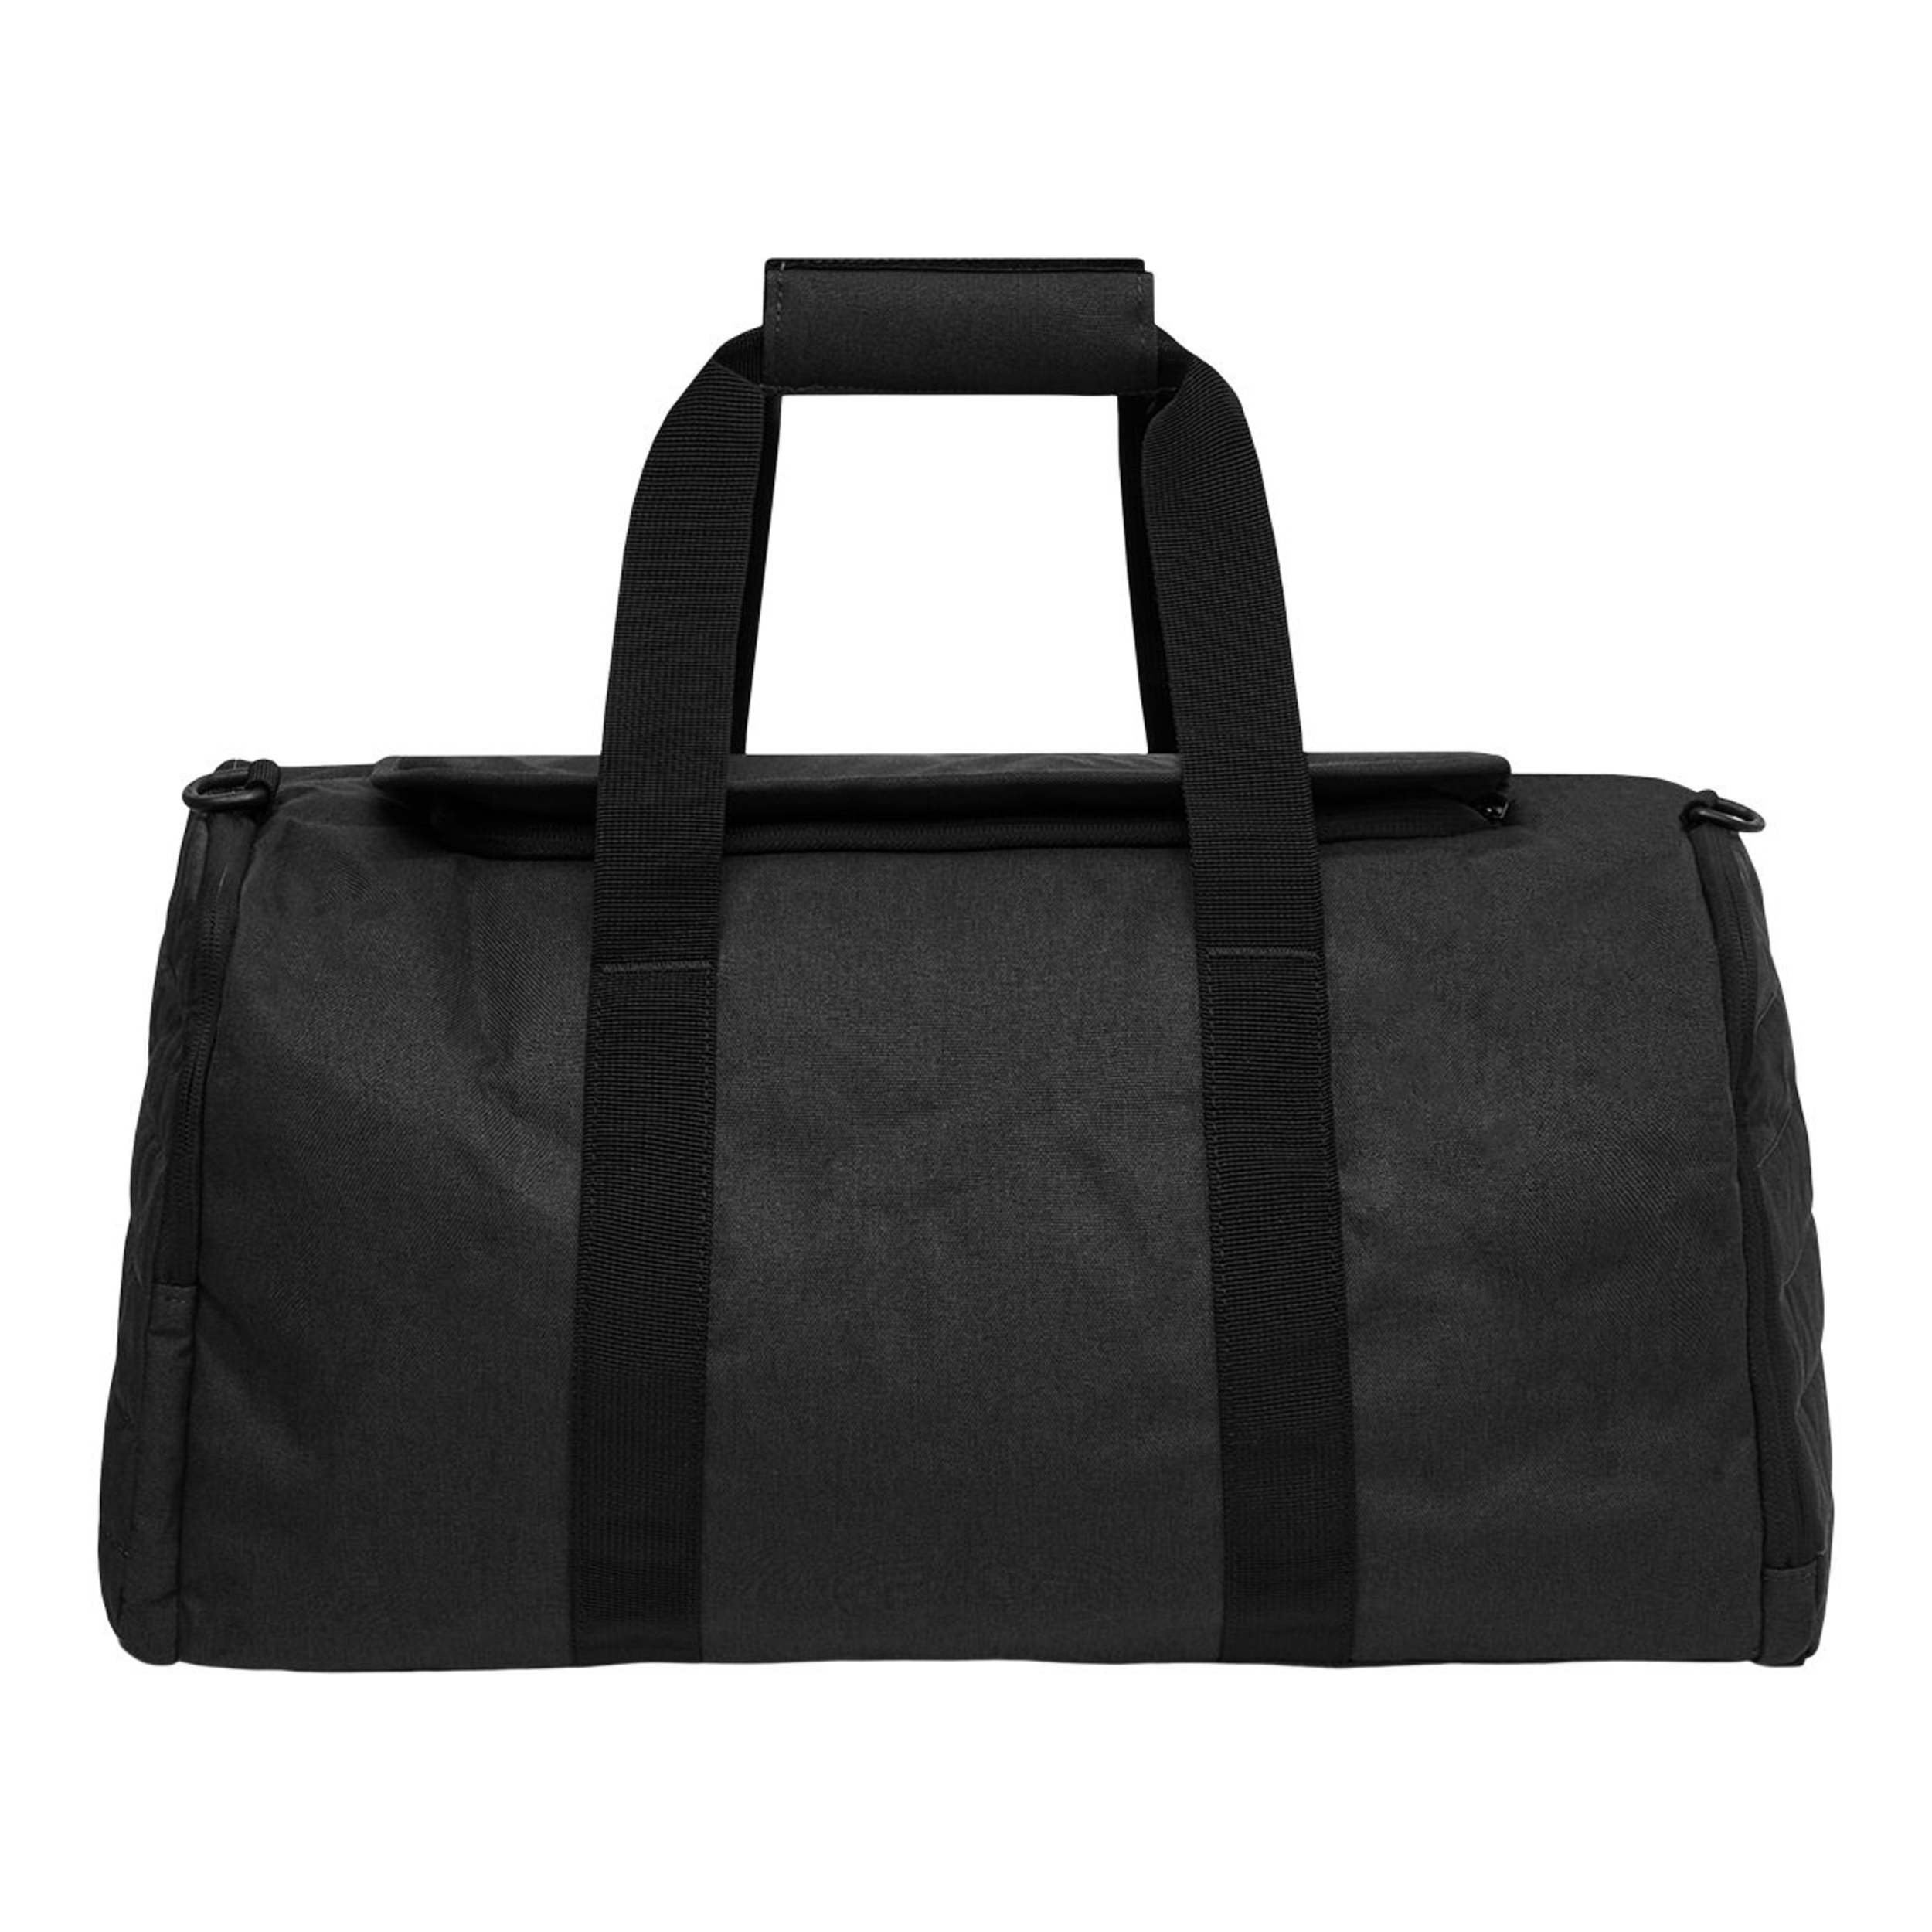 Oakley Enduro 3 Duffle Bag | SportChek